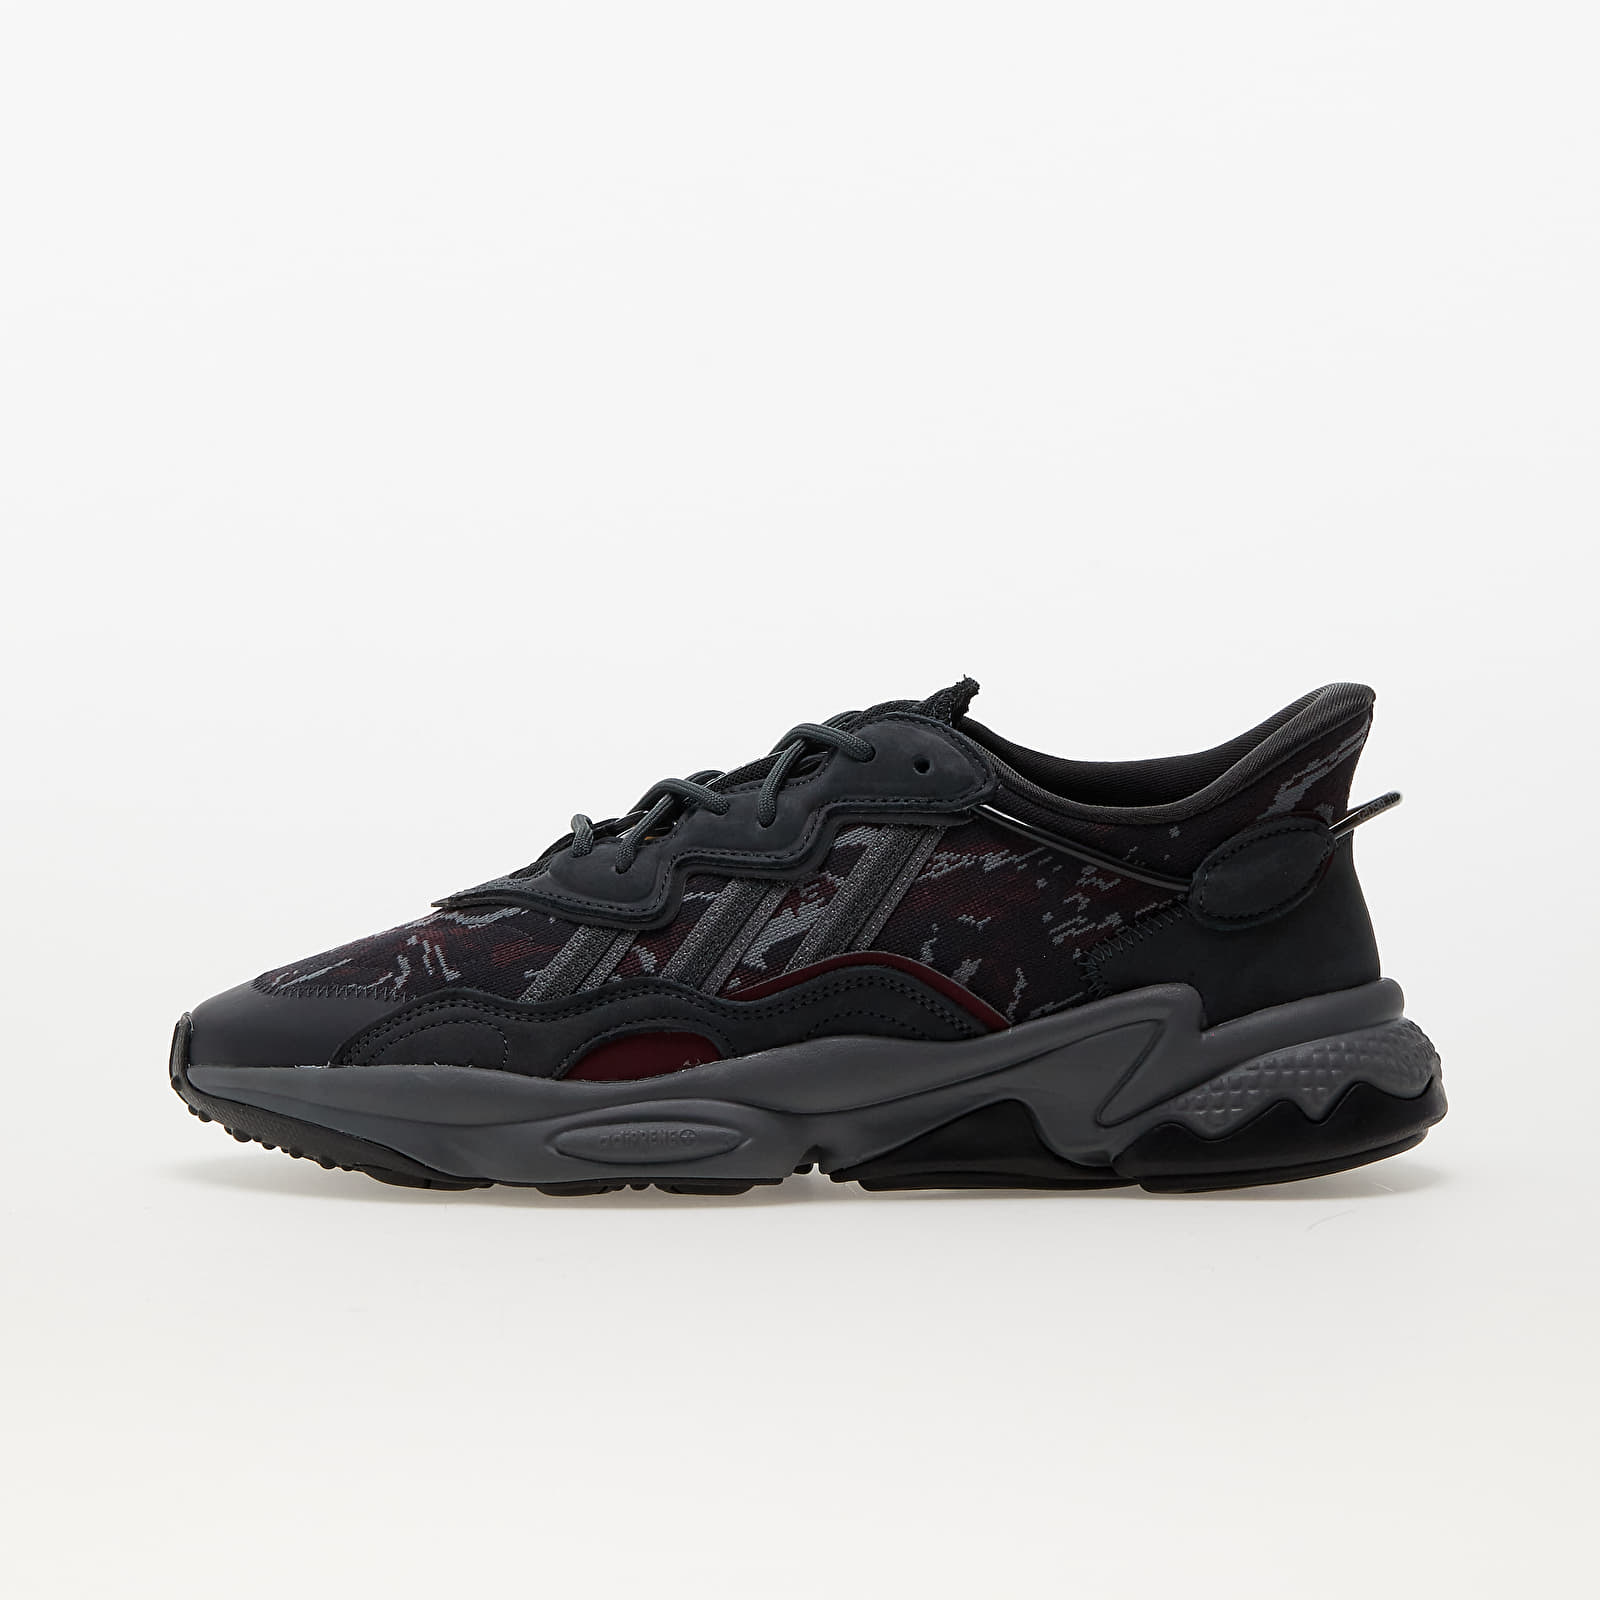 Turnschuhe und Schuhe für Männer adidas Originals Ozweego Carbon/ Carbon/ Shadow Red